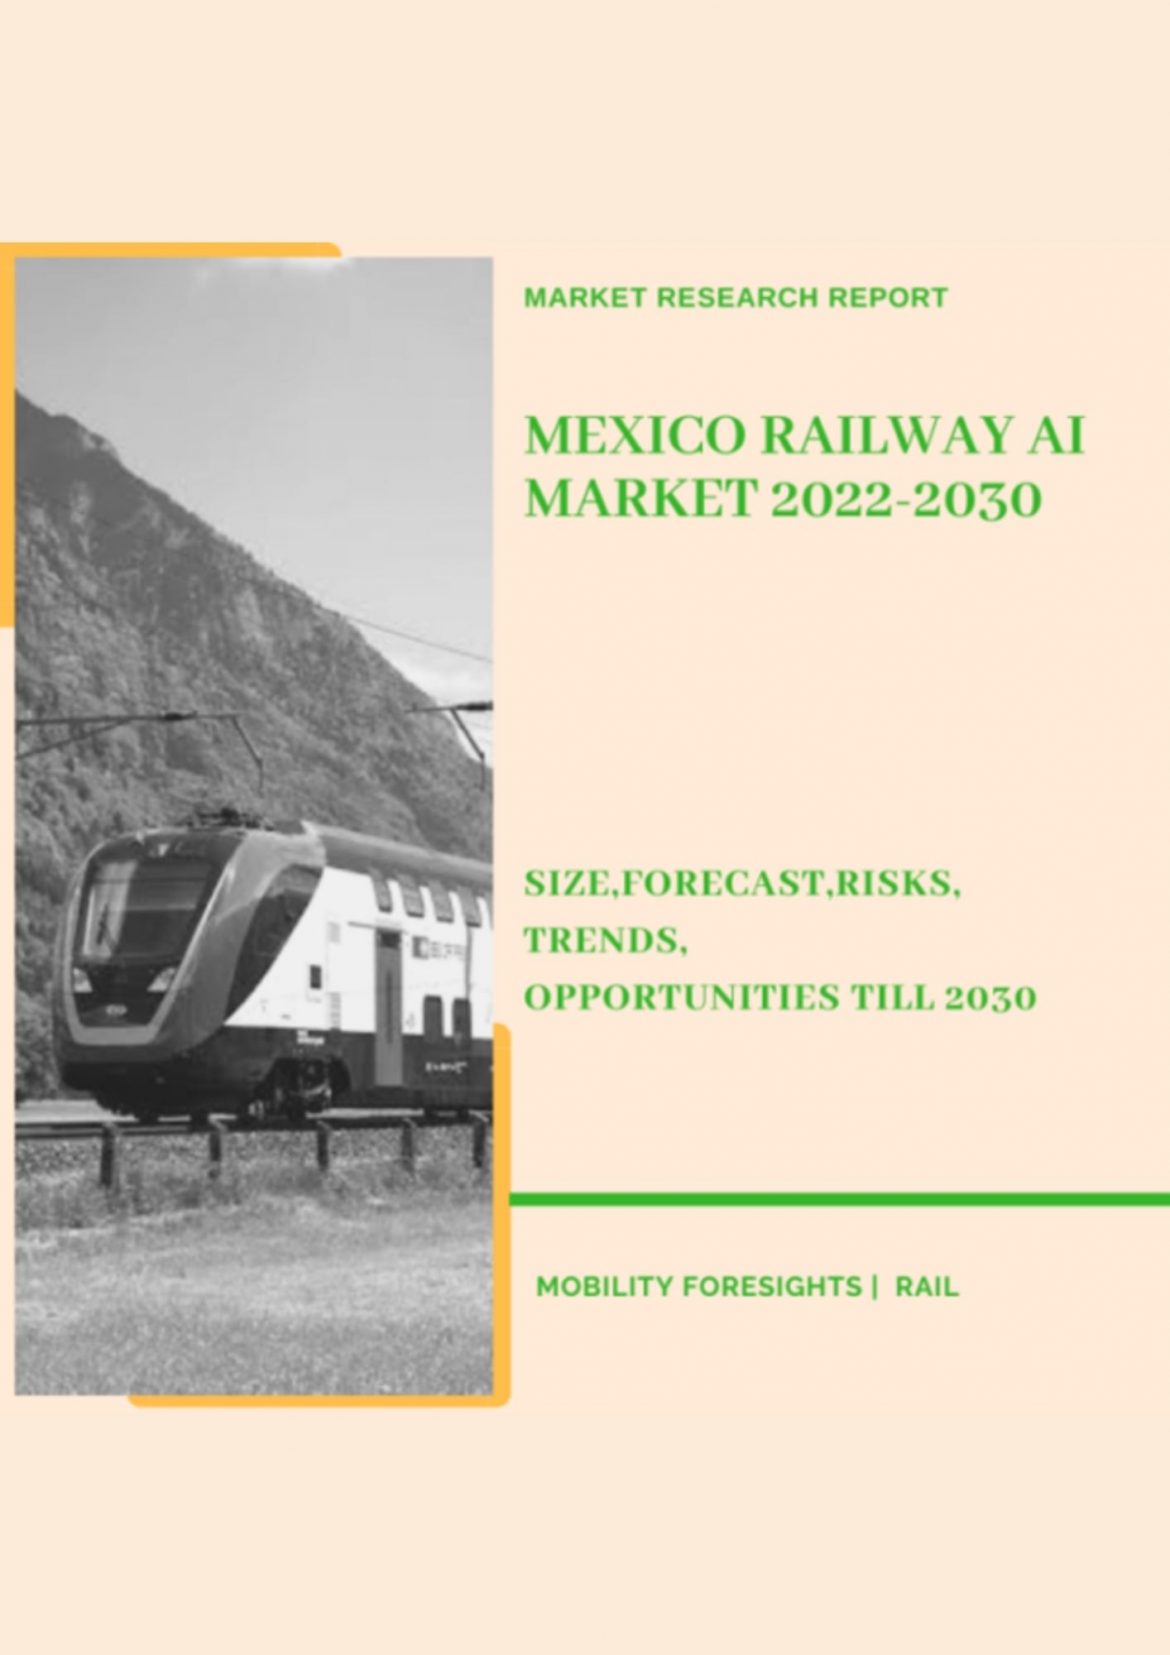 Mexico Railway AI Market 2022-2030